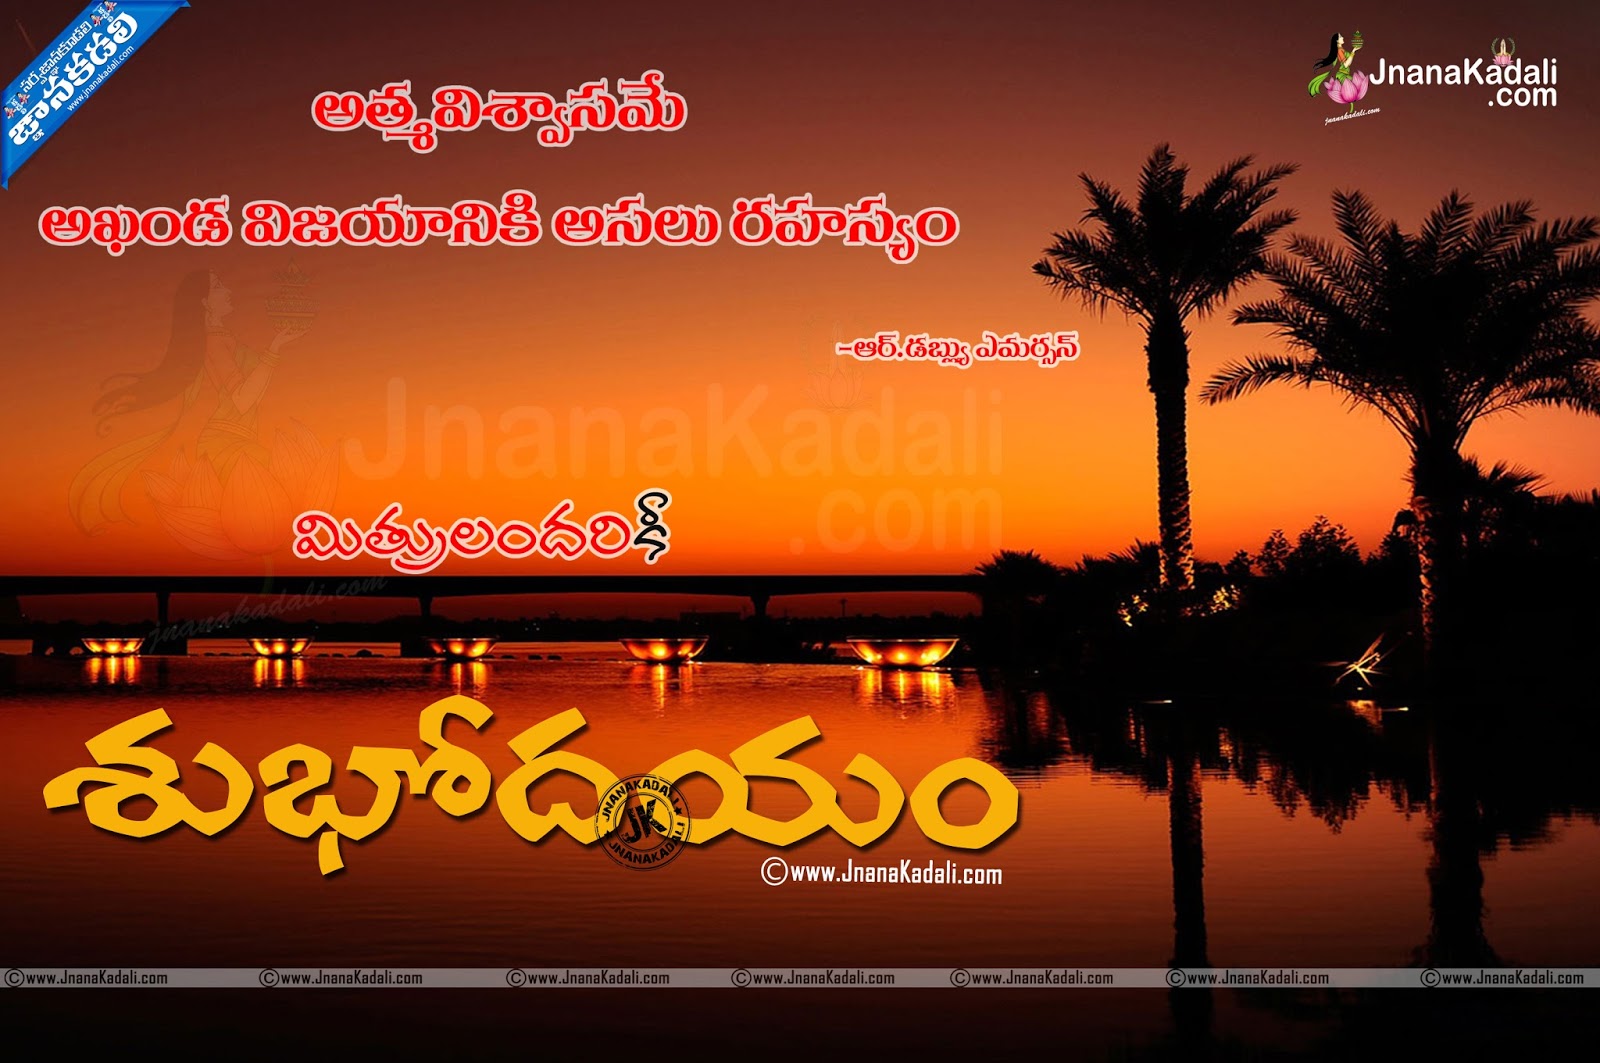 Best Telugu Subhodayam Images With Telugu Inspirational Messages